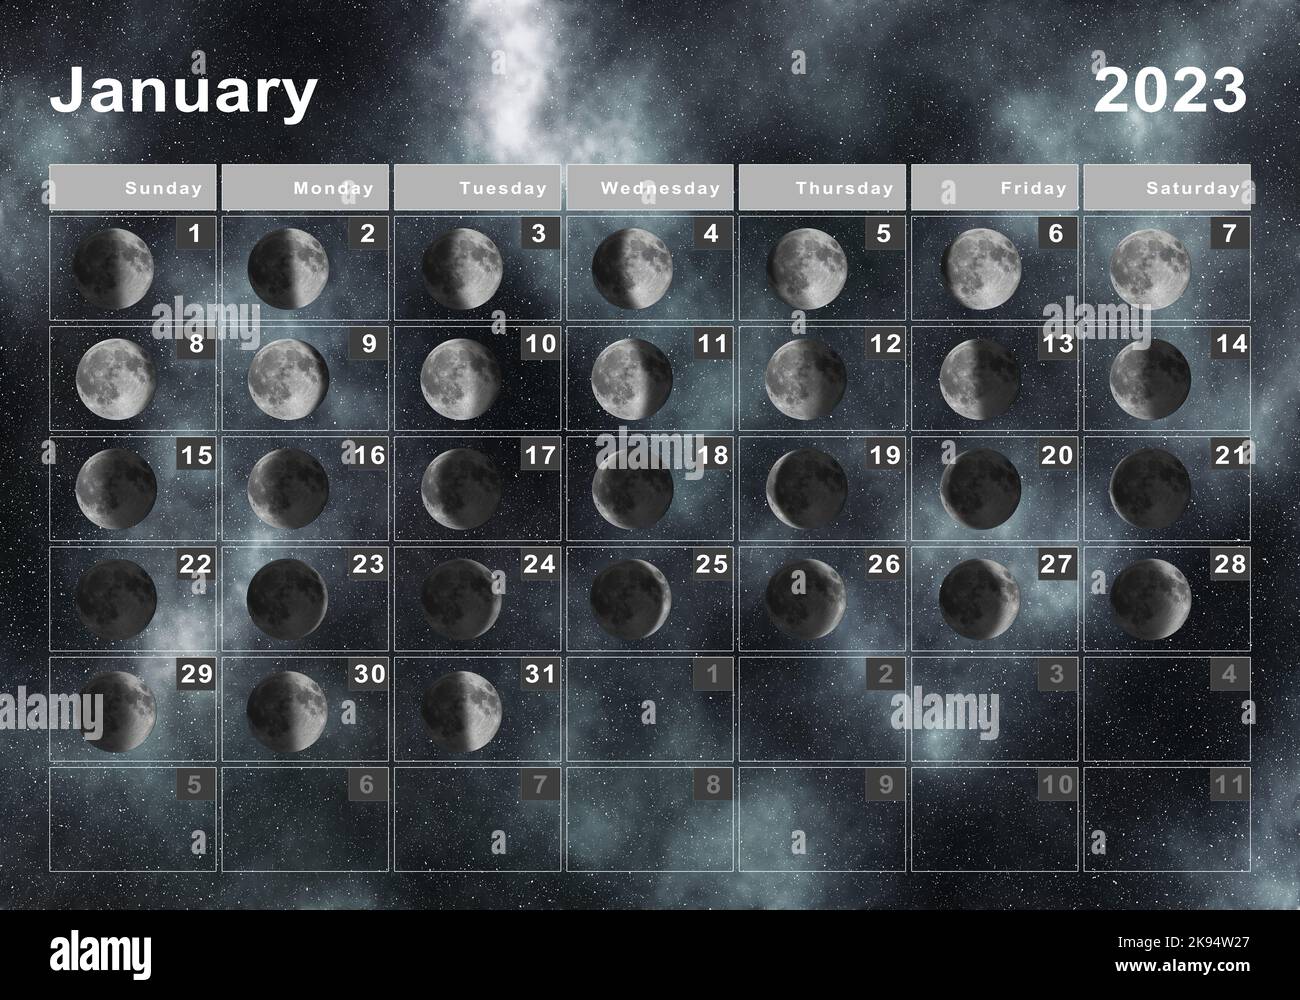 Лунный календарь мир космоса на январь 2024. Moon Calendar 2023. Лунный календарь на январь 2023. Лунный календарь маникюра на 2023 год. Лунный календарь заполняем луну.